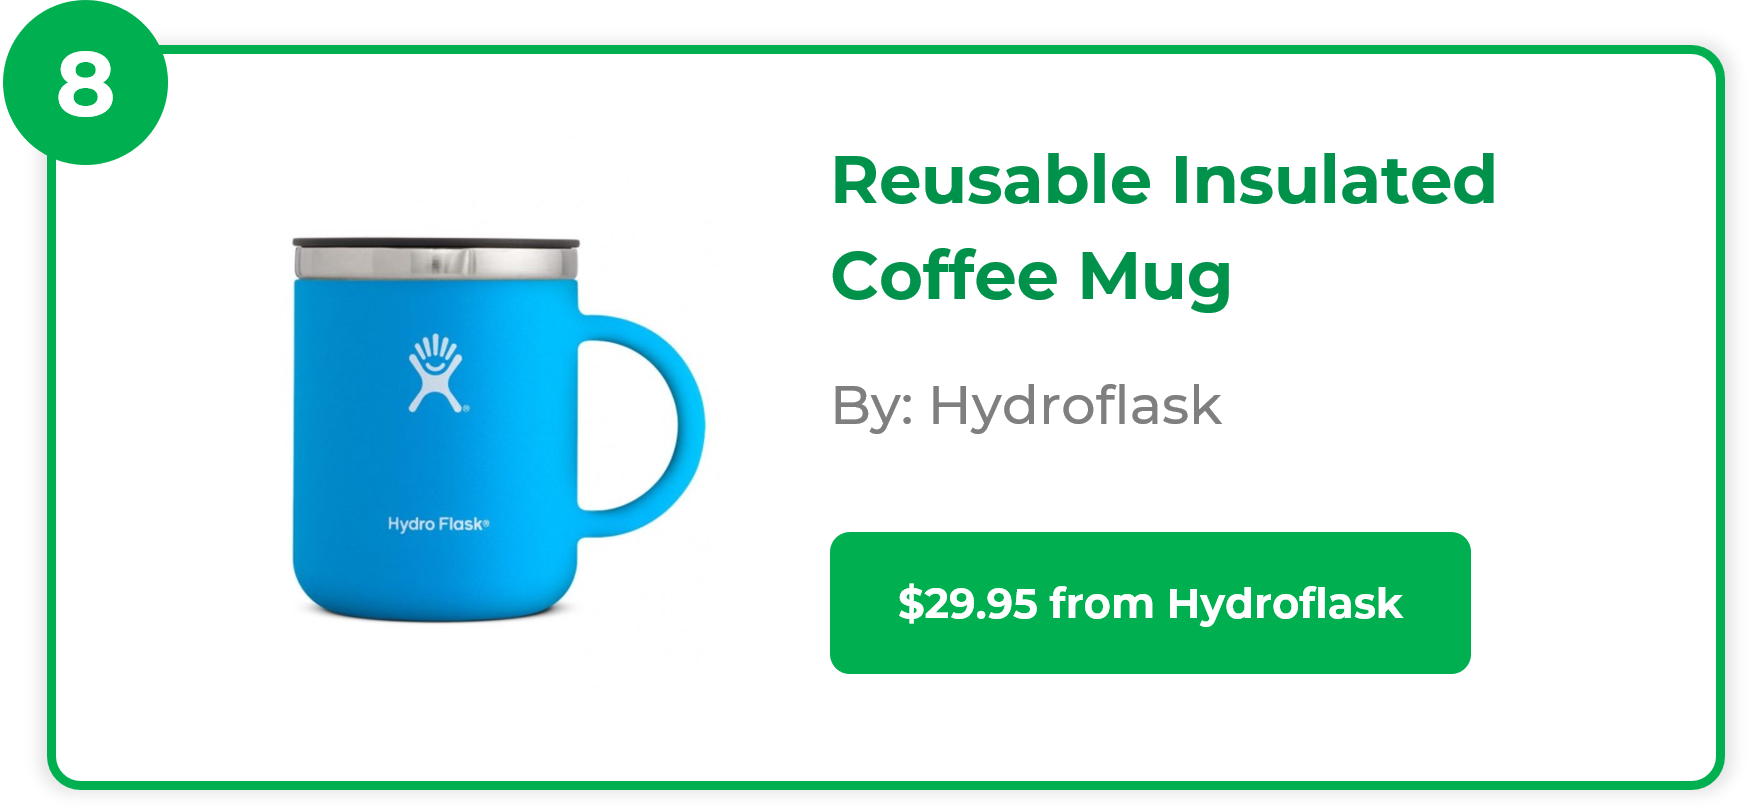 Reusable Insulated Coffee Mug - Hydroflask